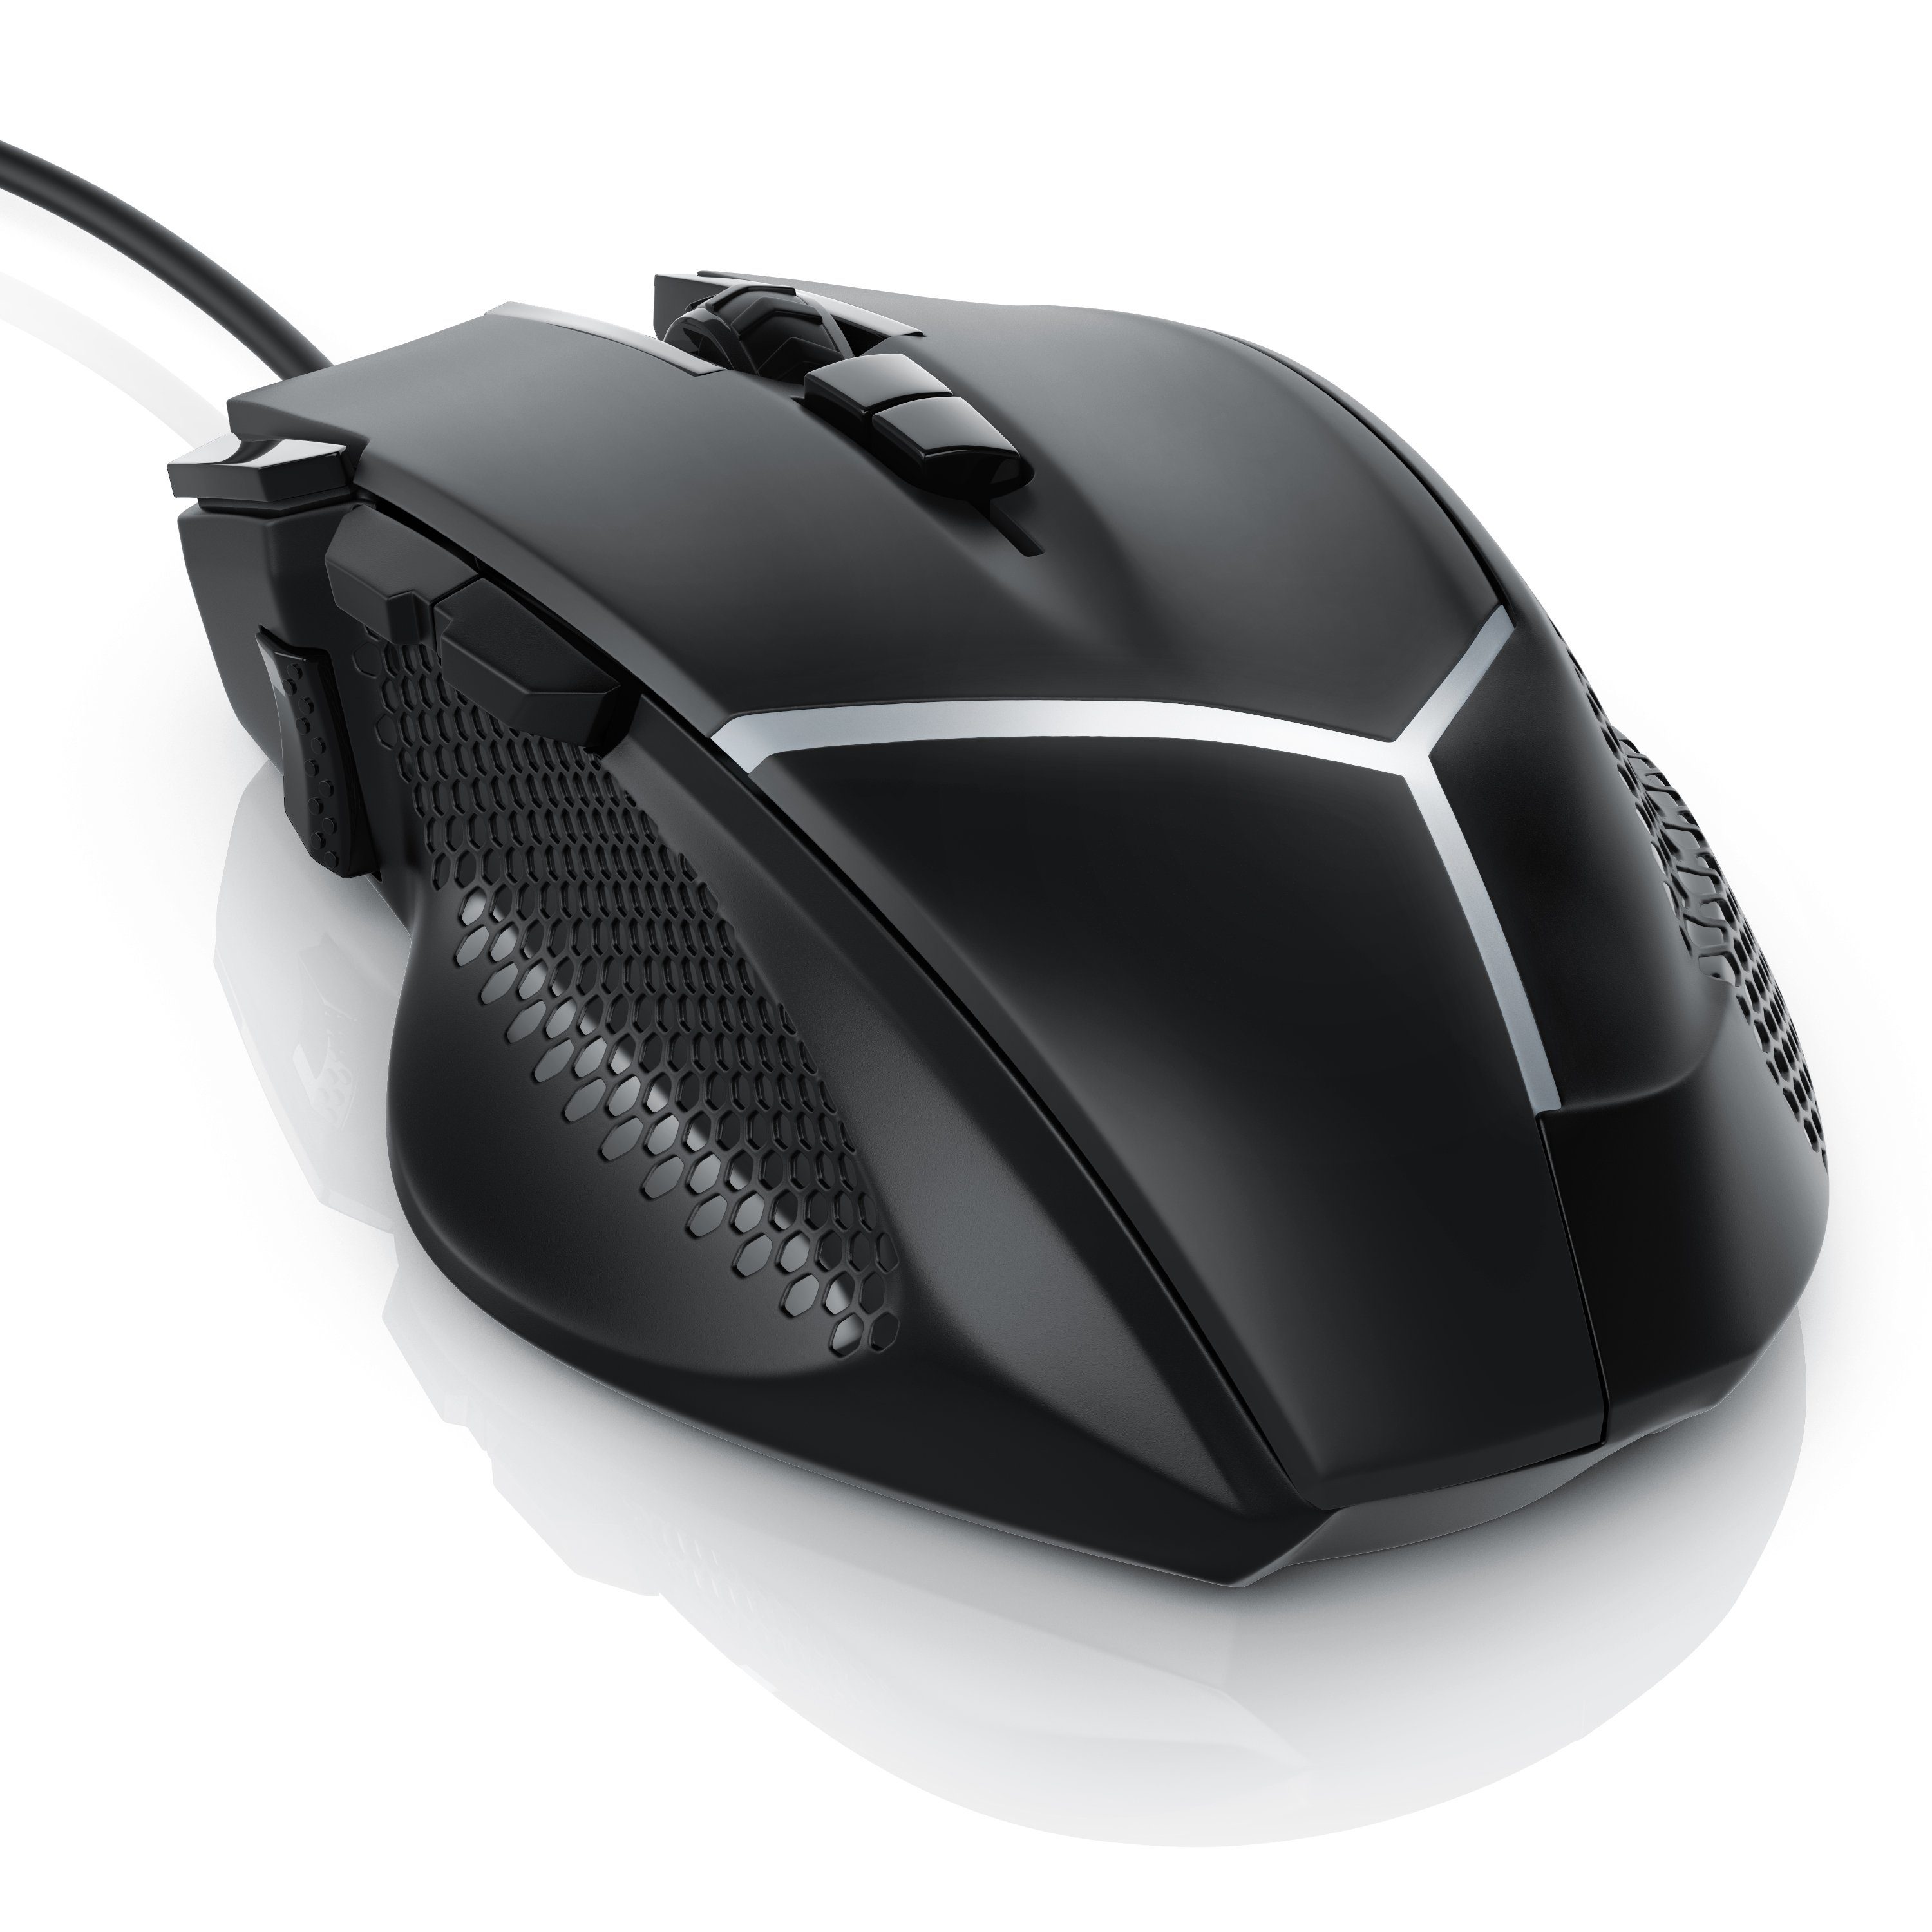 CSL Gaming-Maus (kabelgebunden, 500 dpi, Gewichten) 3200 ergonomisch, wählbar, dpi, Abtastrate Mouse inkl